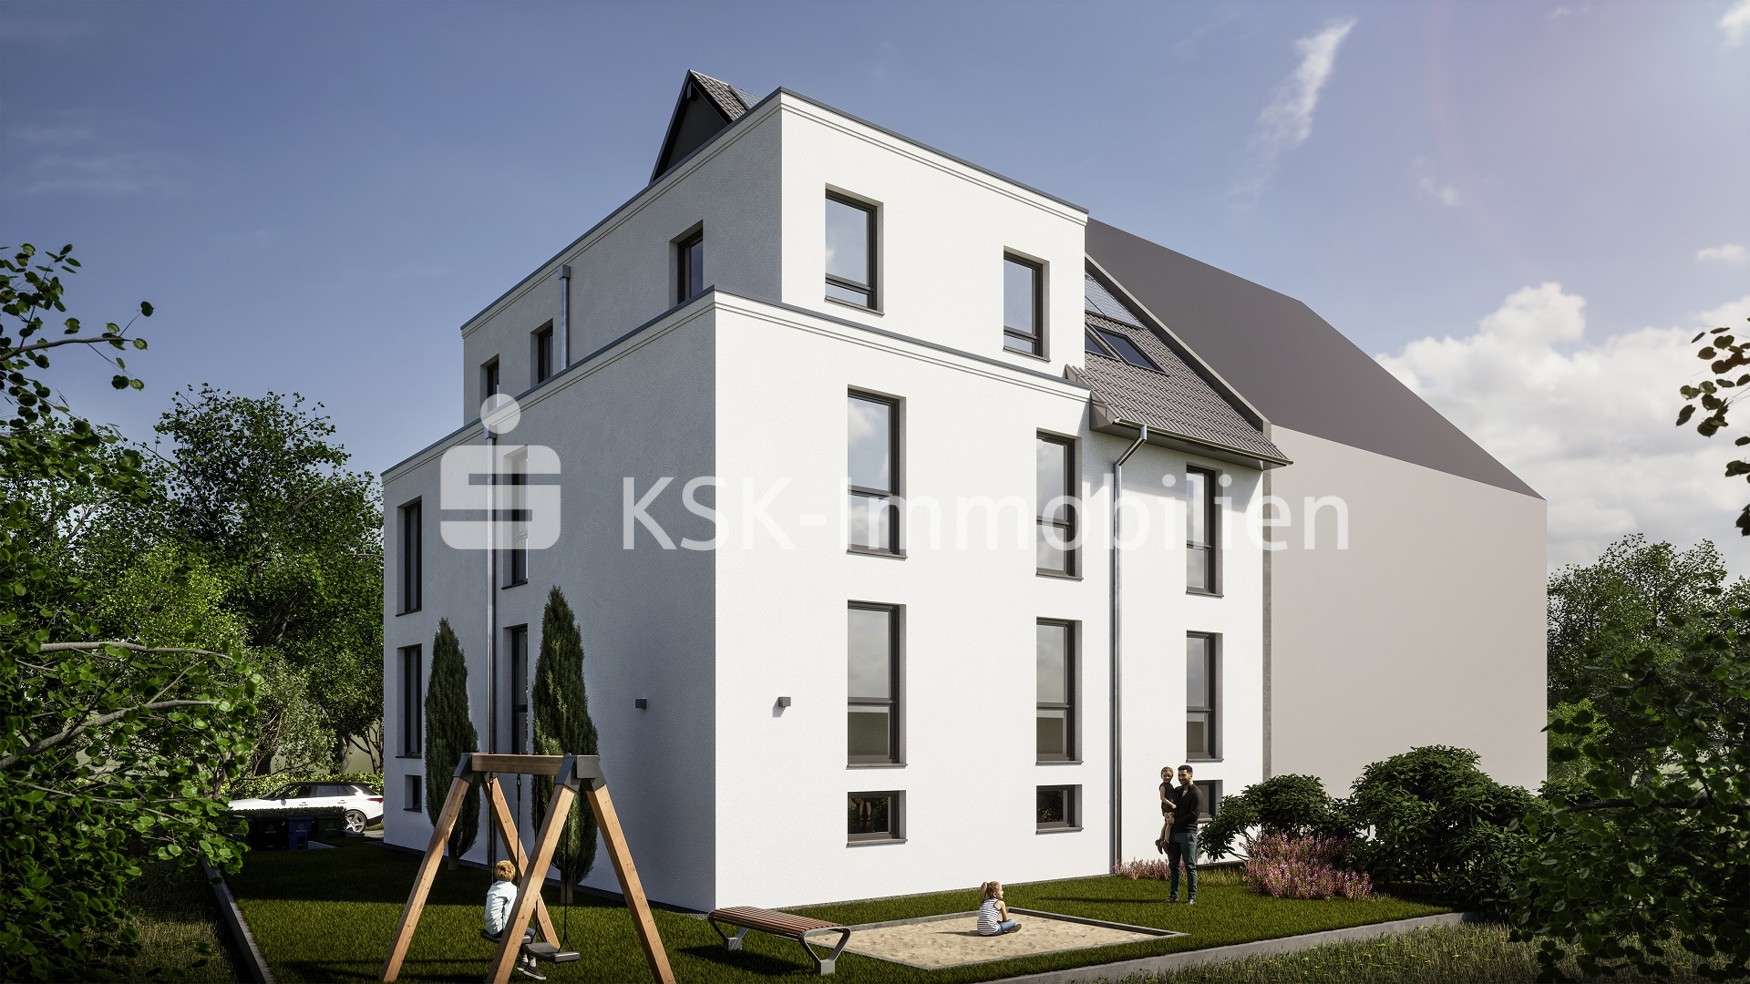 Gartenansicht - Dachgeschosswohnung in 50769 Köln / Fühlingen mit 86m² kaufen